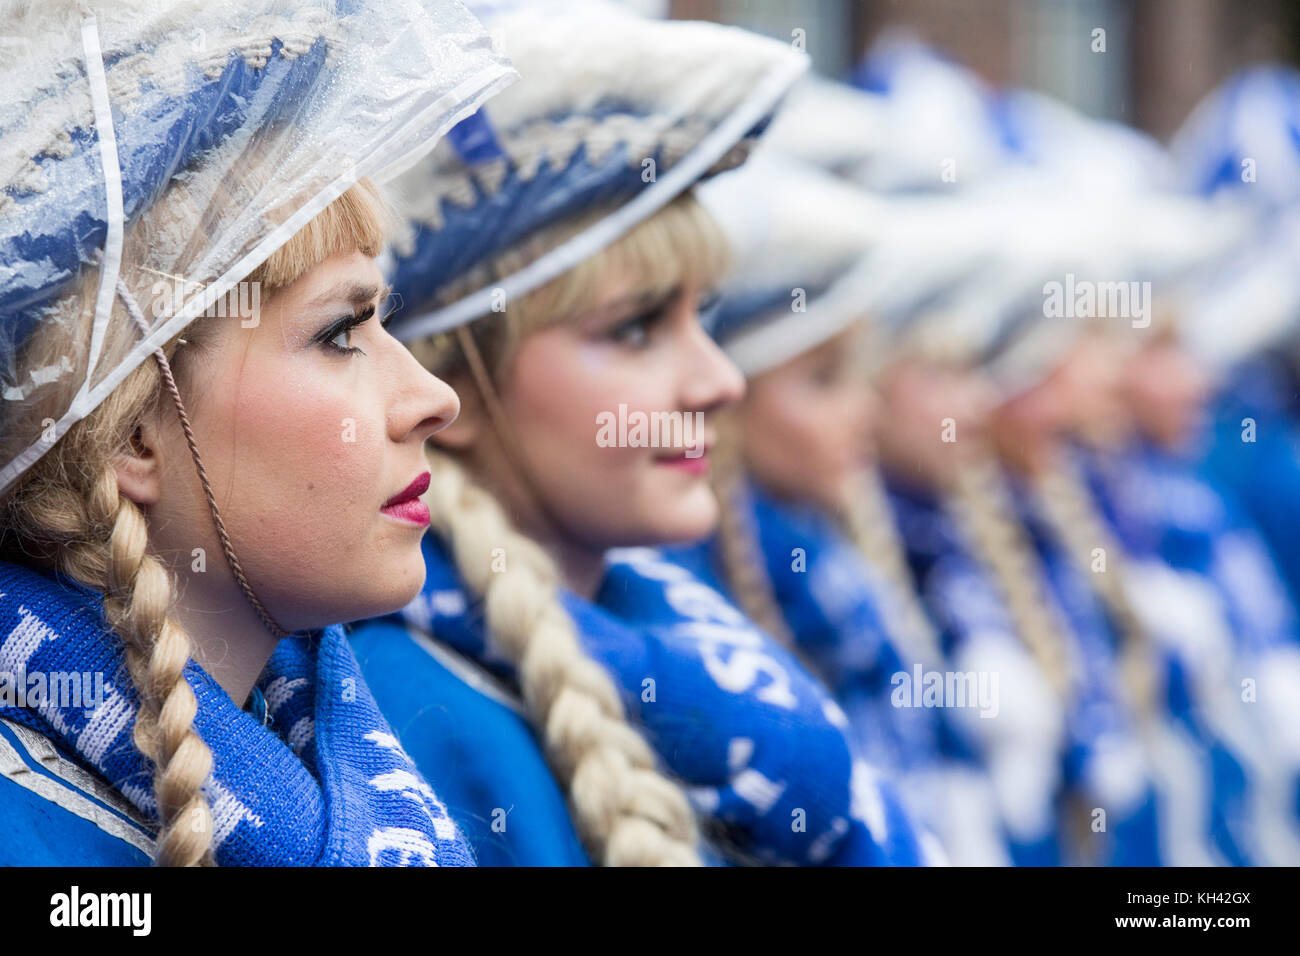 La stagione del Carnevale tedesco inizia tradizionalmente con l'evento Hoppeditz Erwachen il 11 novembre, Düsseldorf, Germania, e corre al Mercoledì delle Ceneri l'anno seguente. Tradizionale Tanzmariechen, ballerini di majorette. Foto Stock